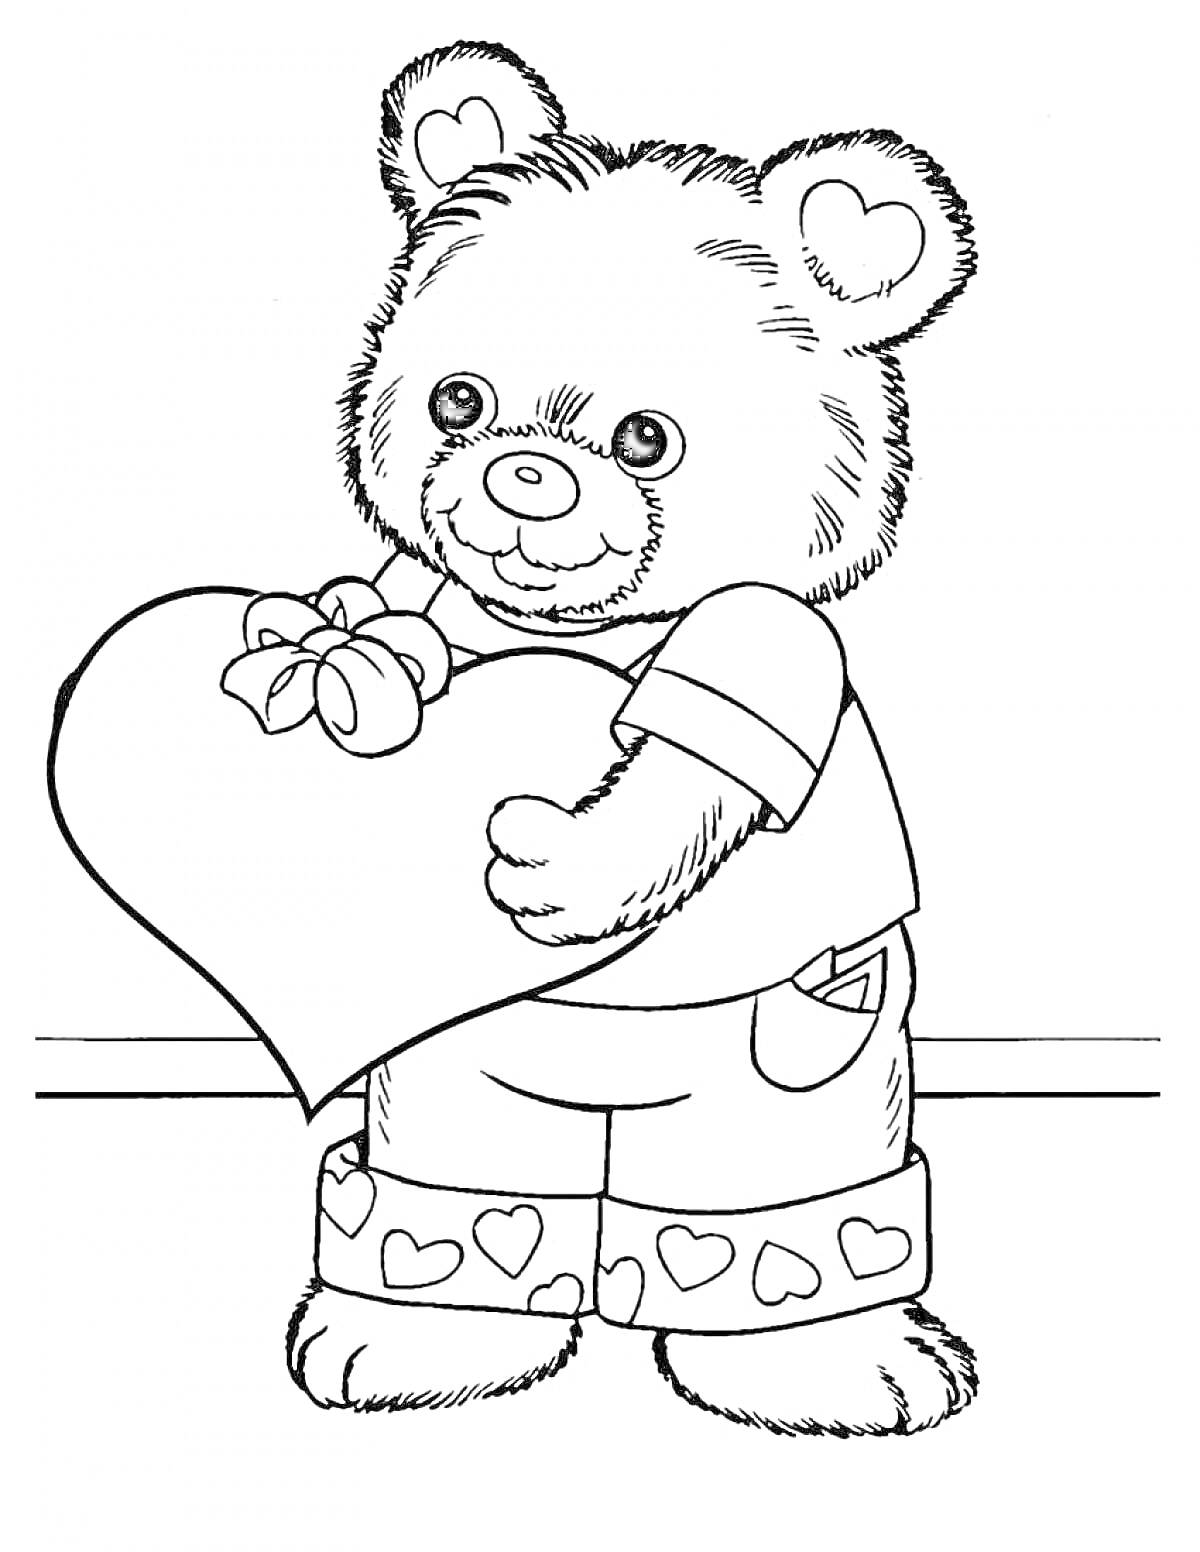 Раскраска Медвежонок с сердцем, в футболке и штанах с сердечками